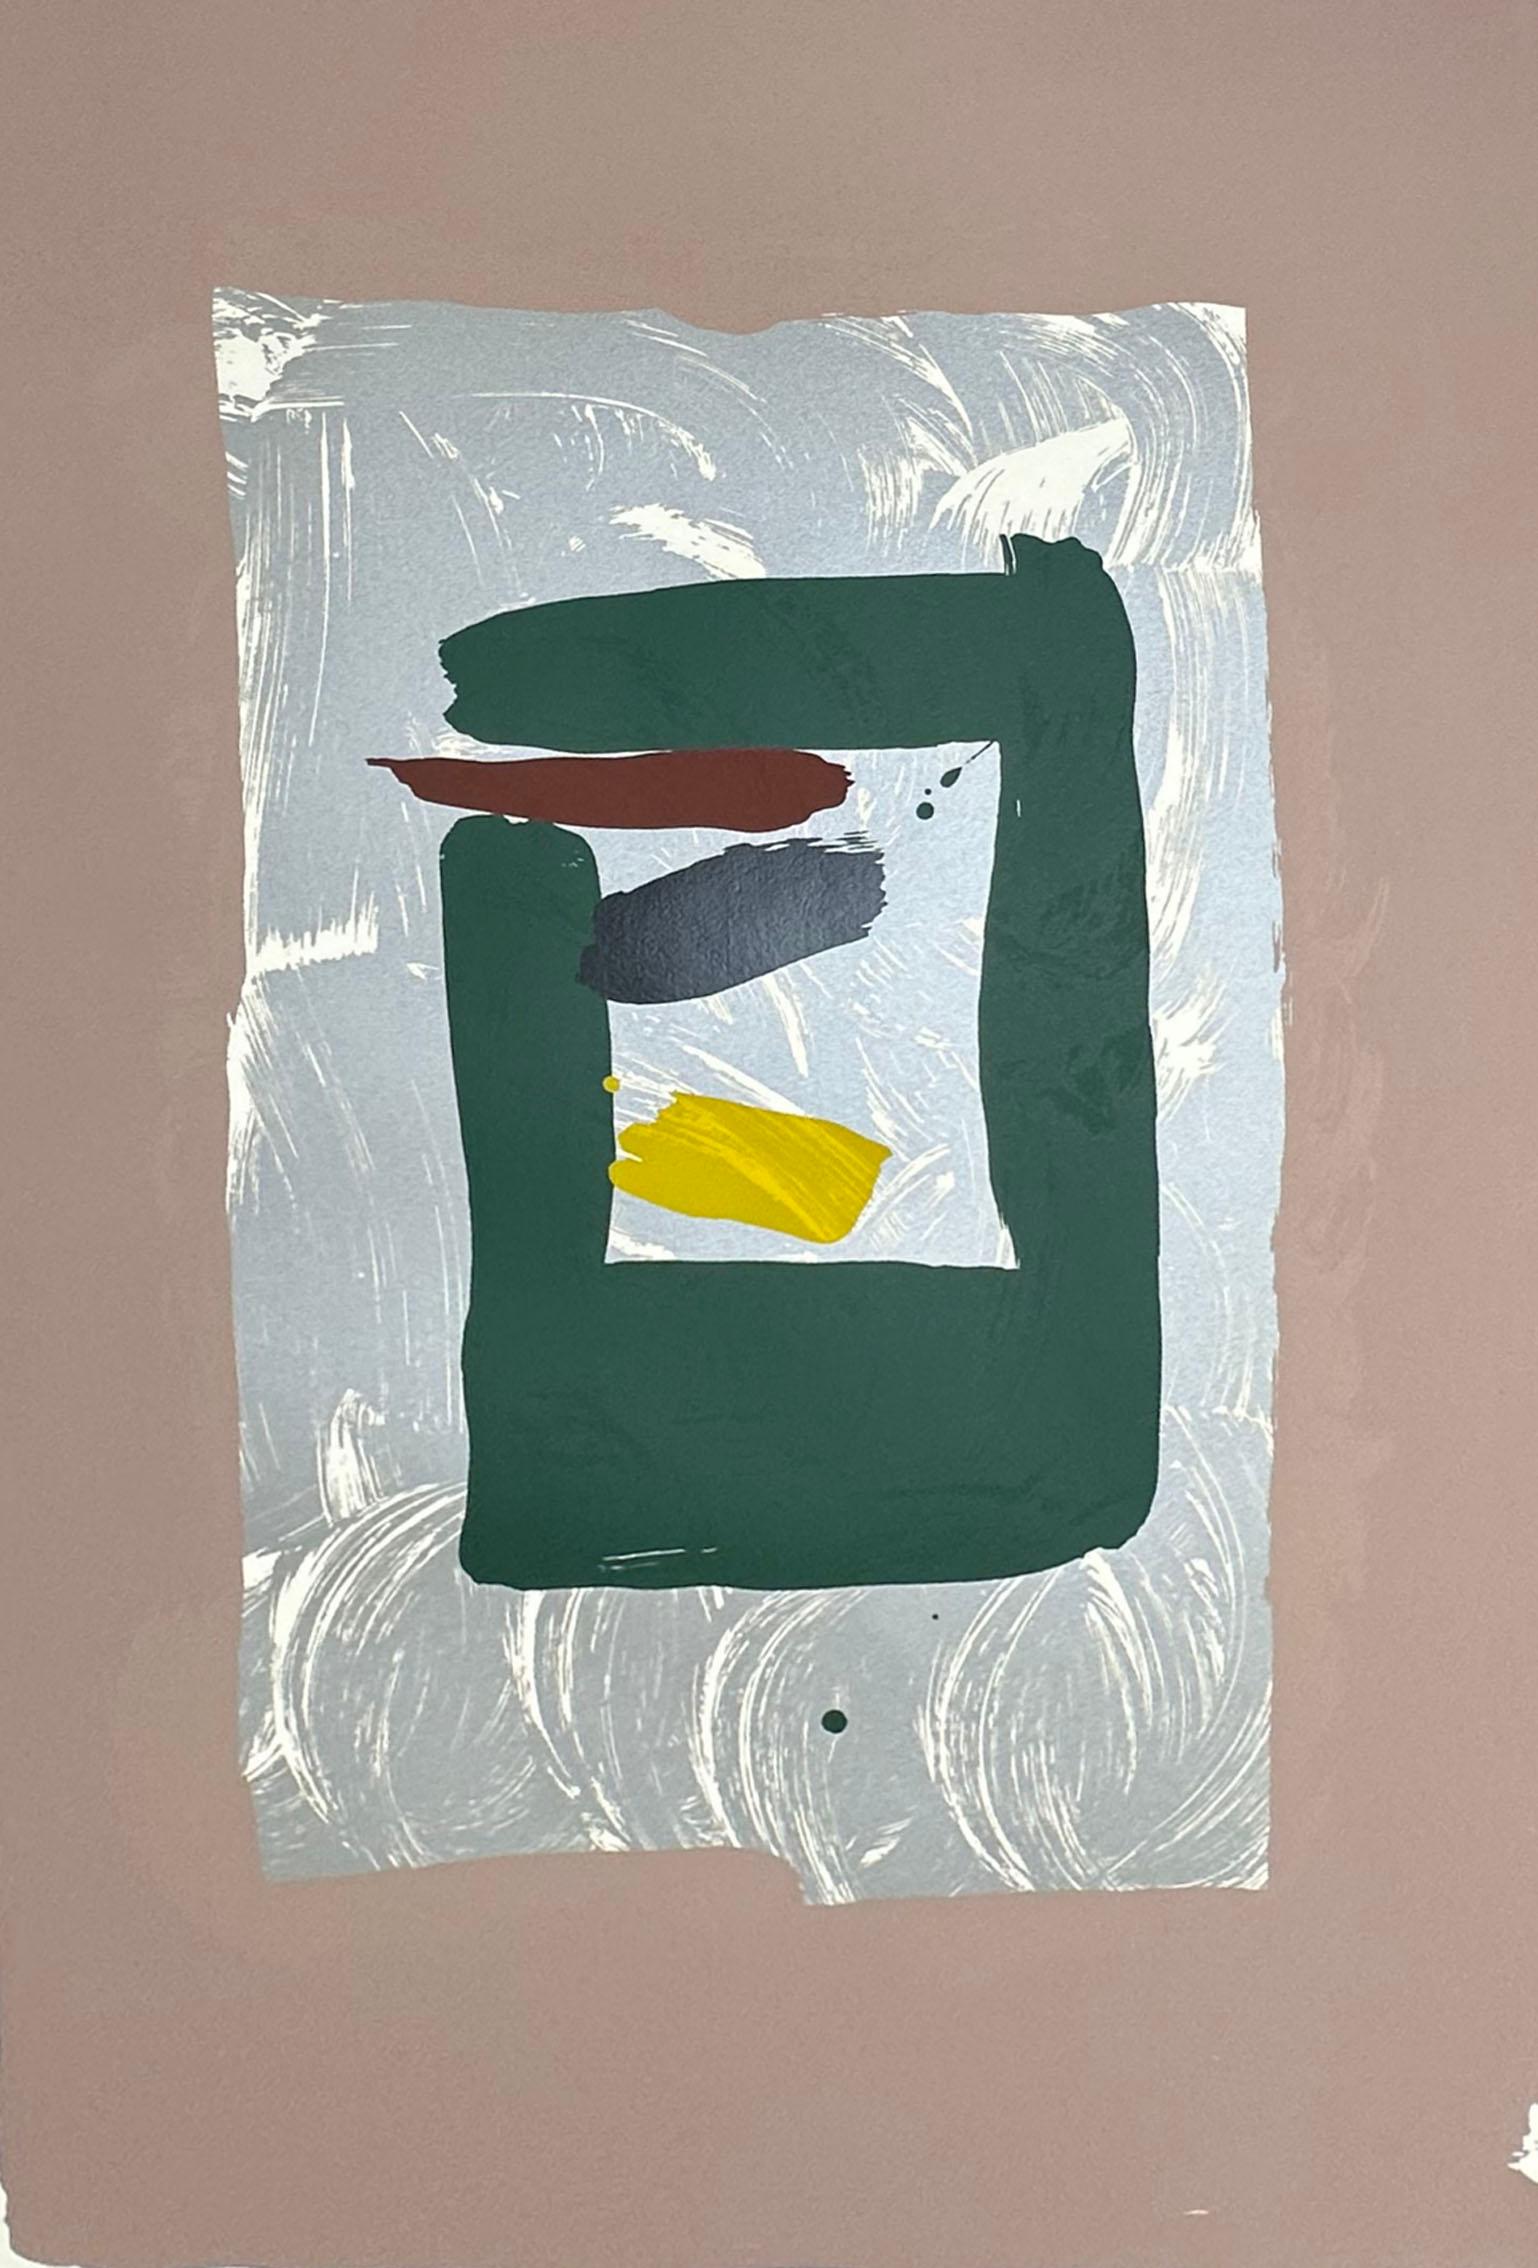 Une sérigraphie en édition limitée de l'artiste américano-japonais Kikuo Saito (1939-2016). Cette œuvre abstraite présente un rectangle central vert foncé imprimé sur un fond argenté et rehaussé d'un tiret brun-rouge, noir et jaune. Un champ de rose